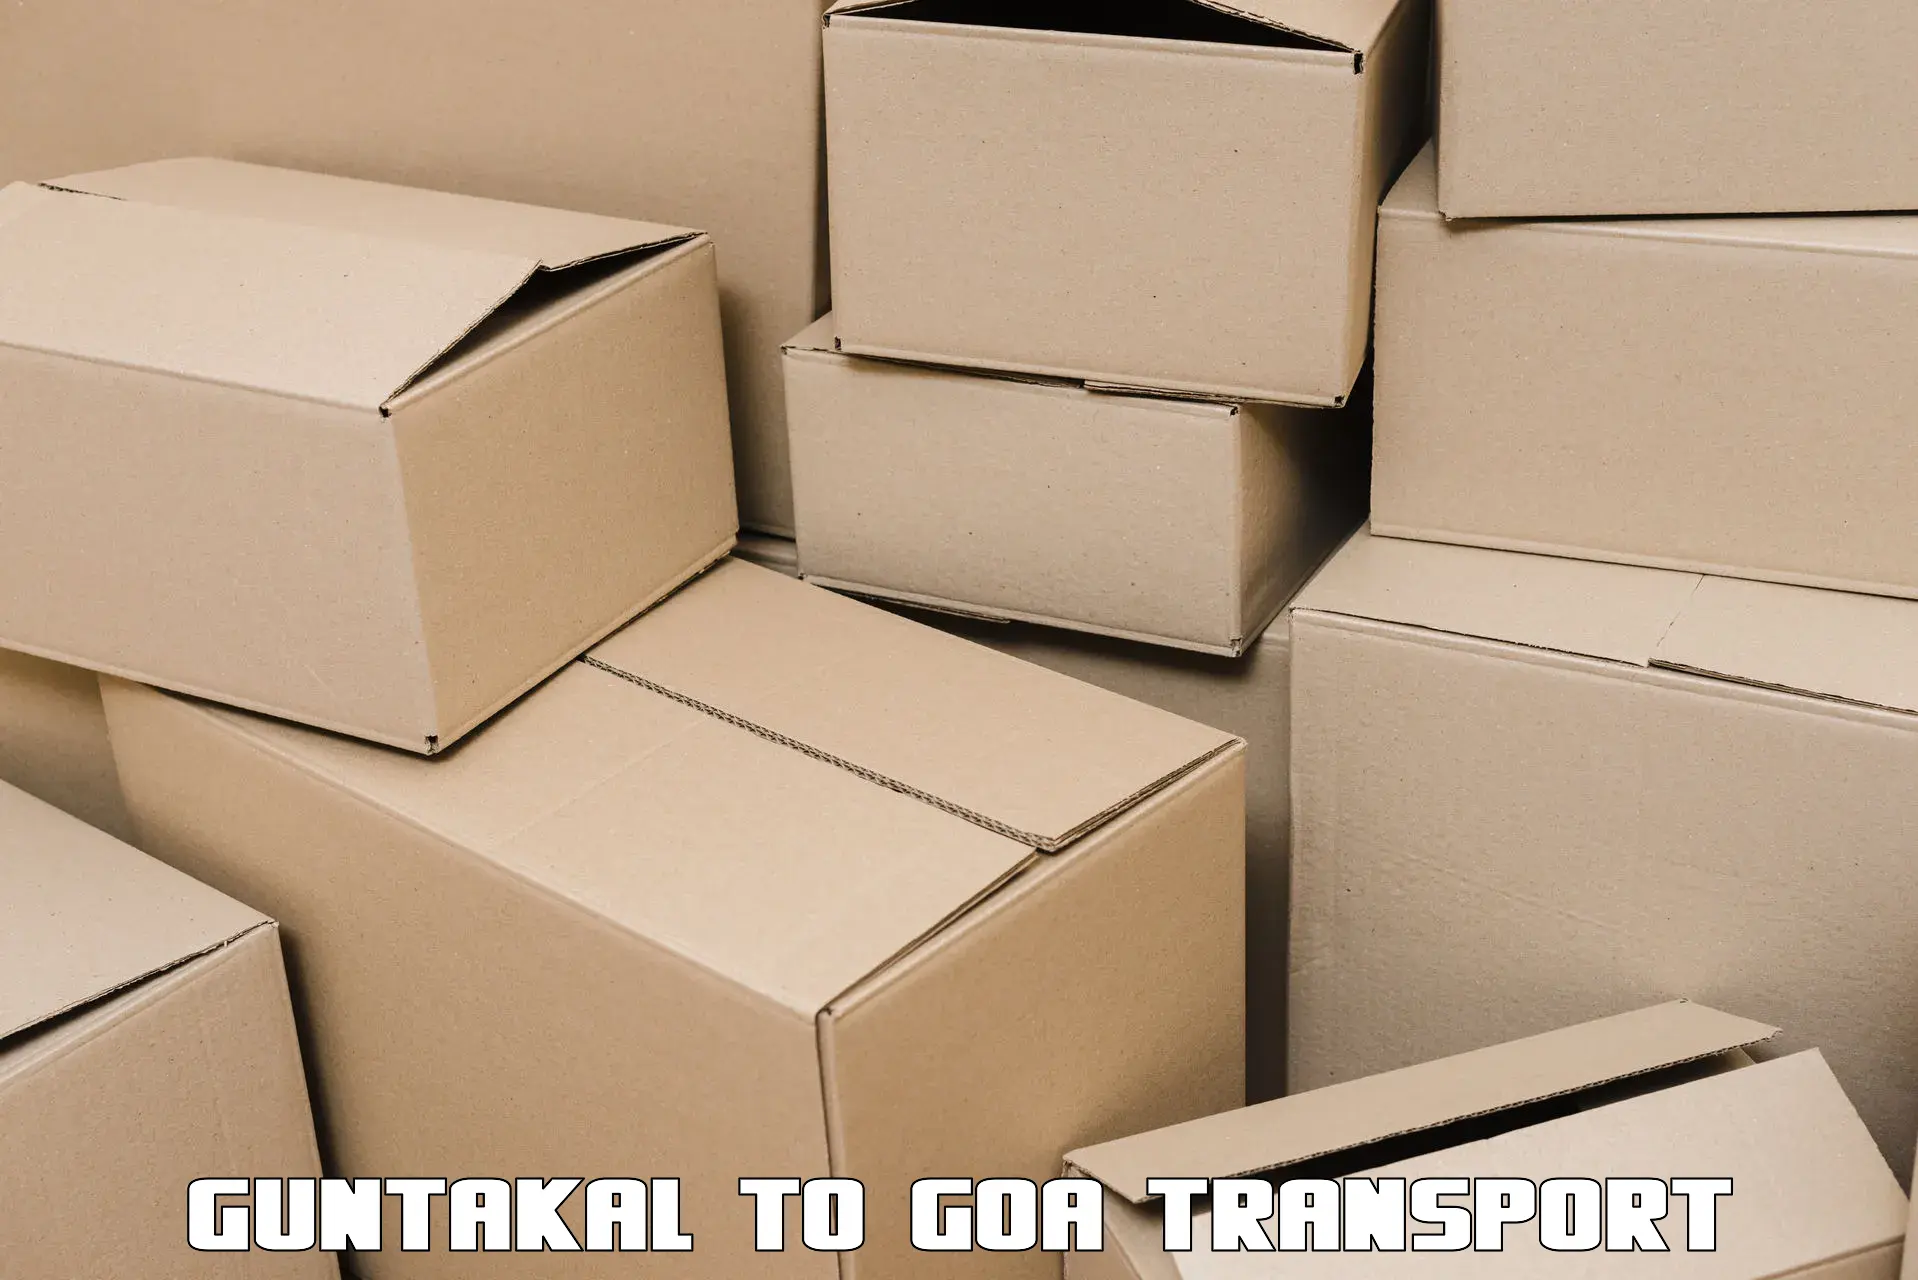 Goods transport services Guntakal to Panjim